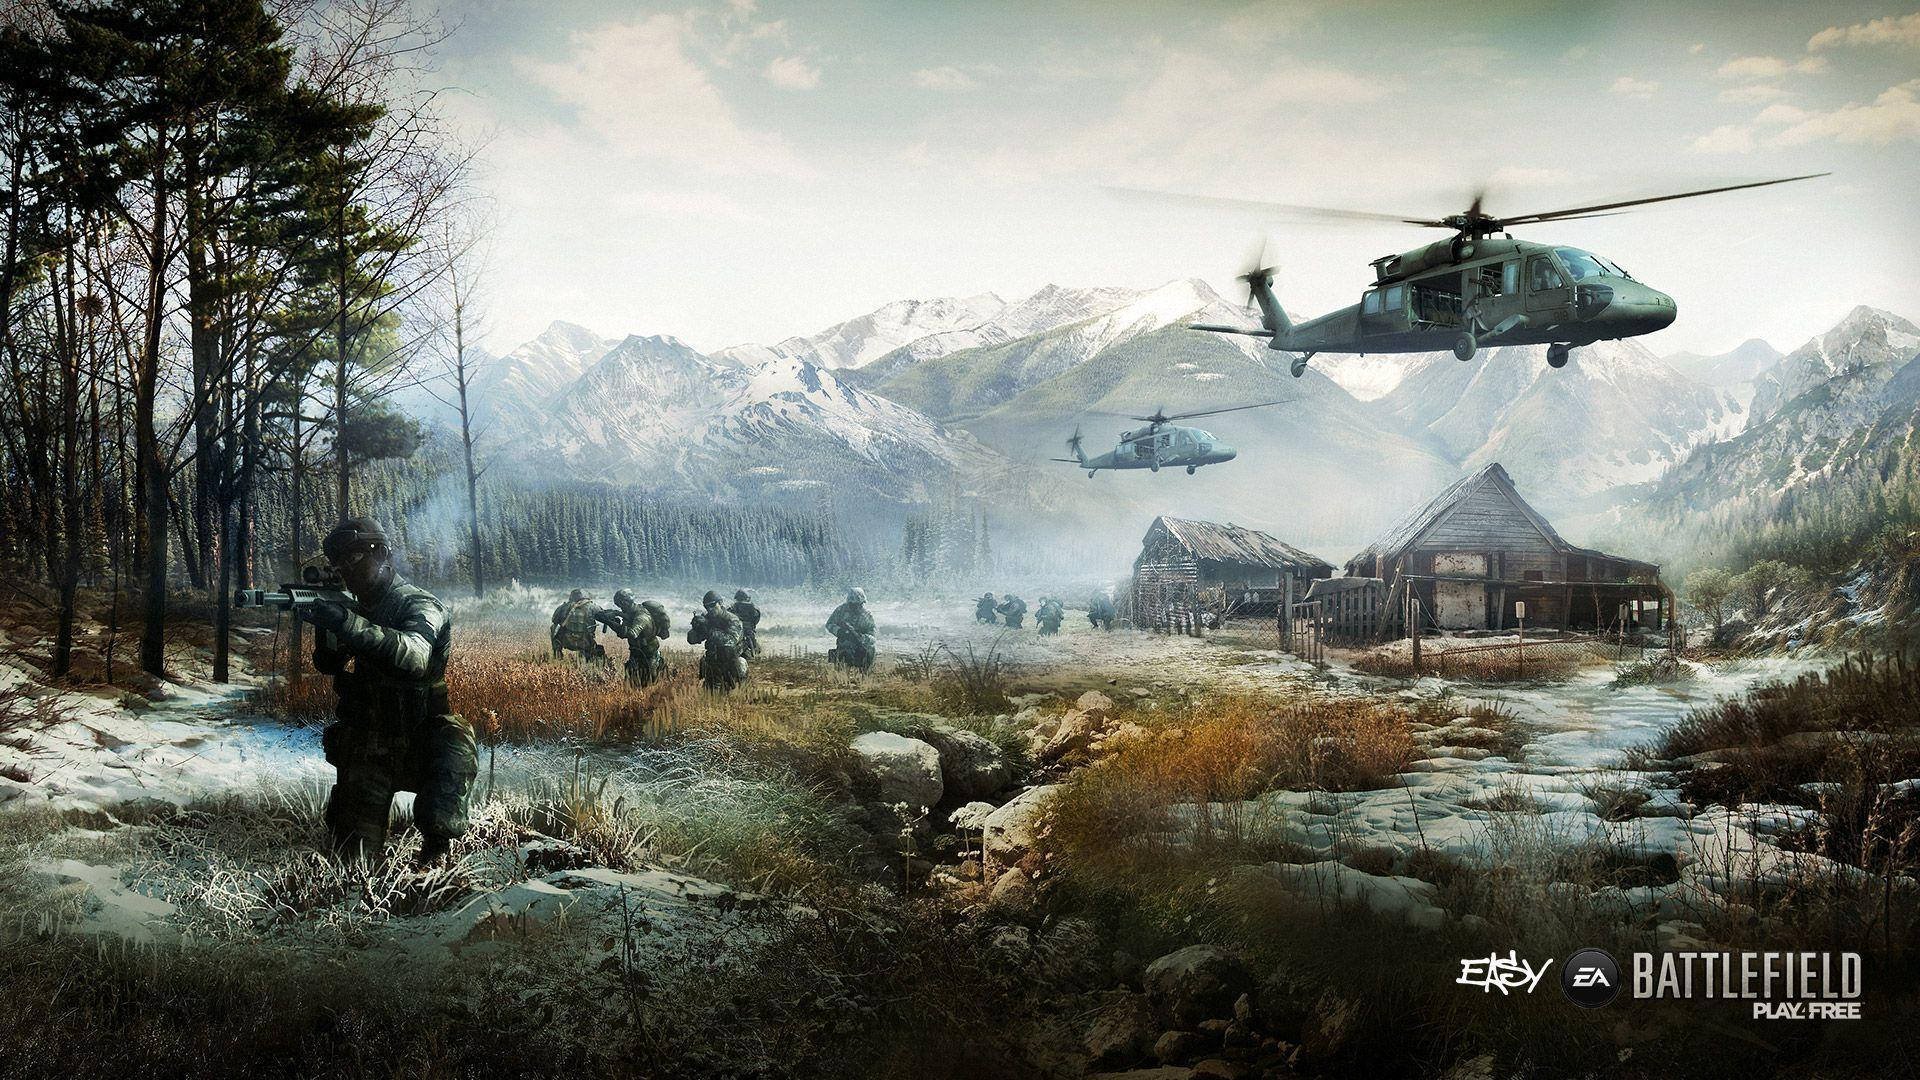 Vistaaérea De La Ciudad De Battlefield 4. Fondo de pantalla